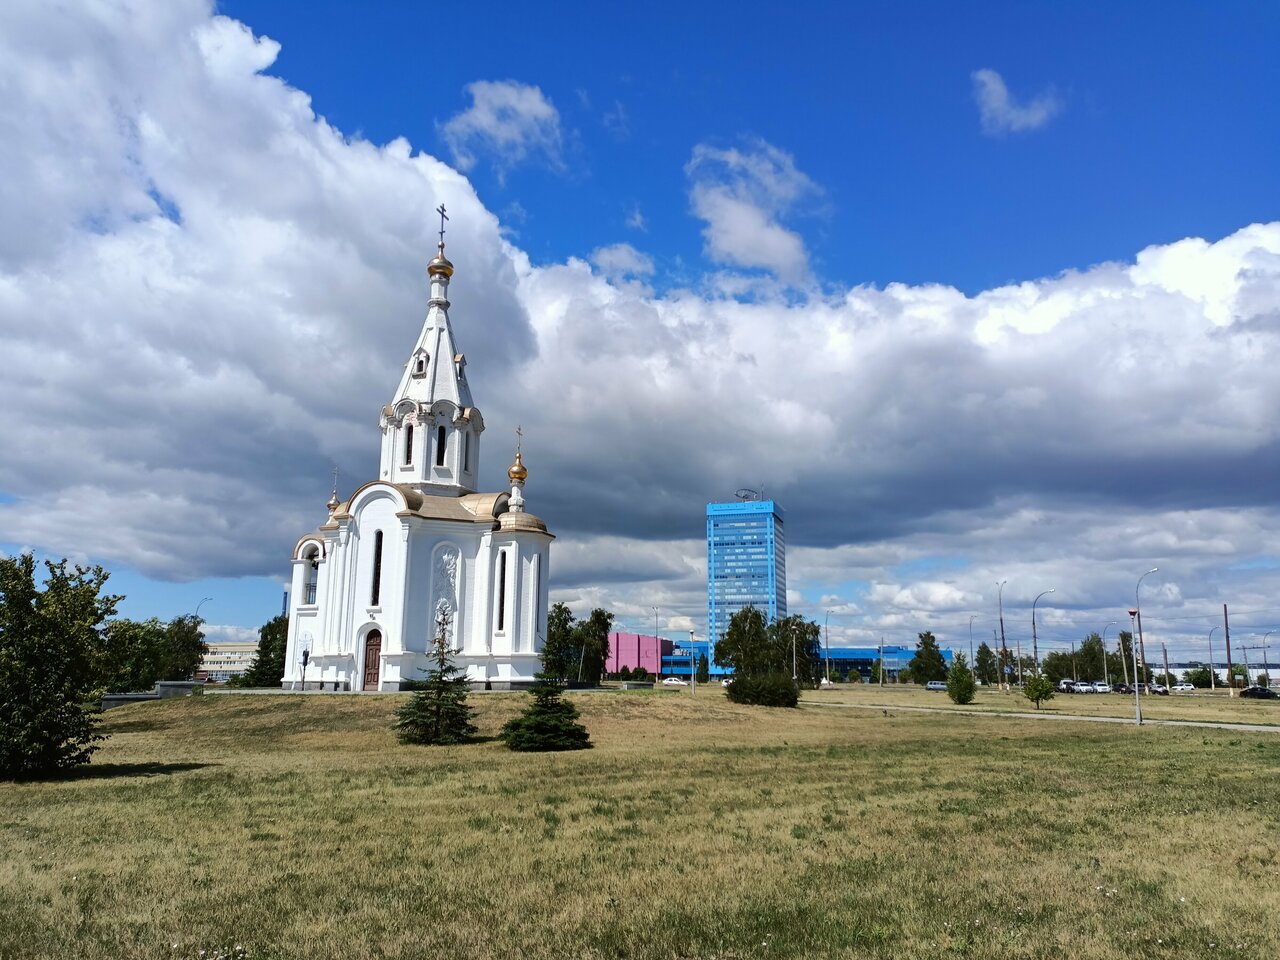 «Достопримечательности в Тольятти: 11 любопытных мест» фото материала